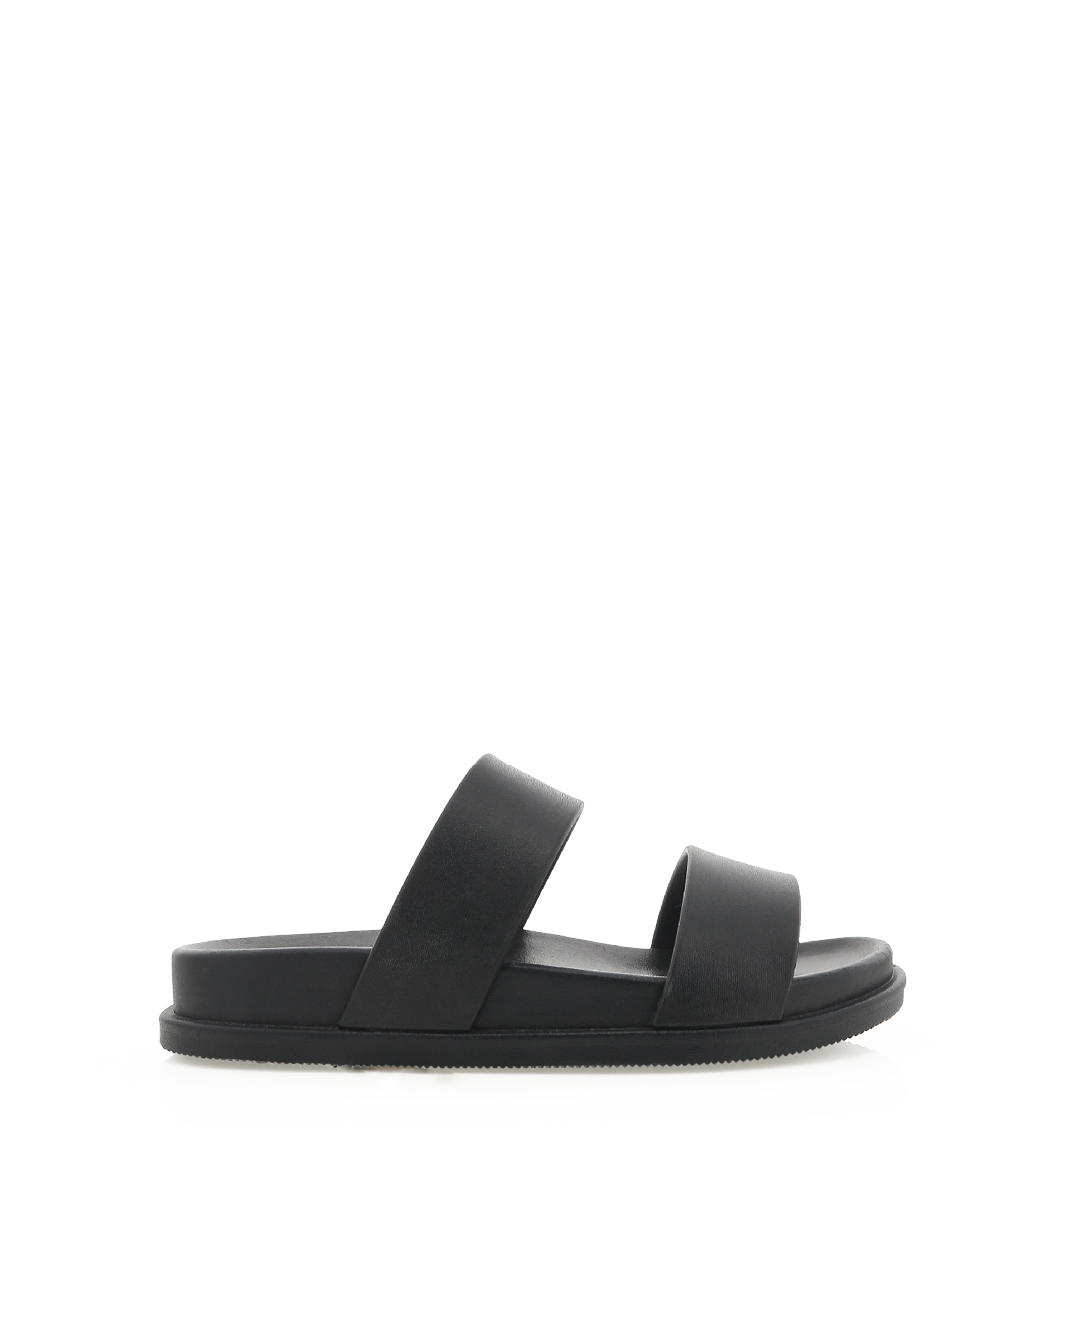 XANDY - BLACK-Sandals-Billini-Billini